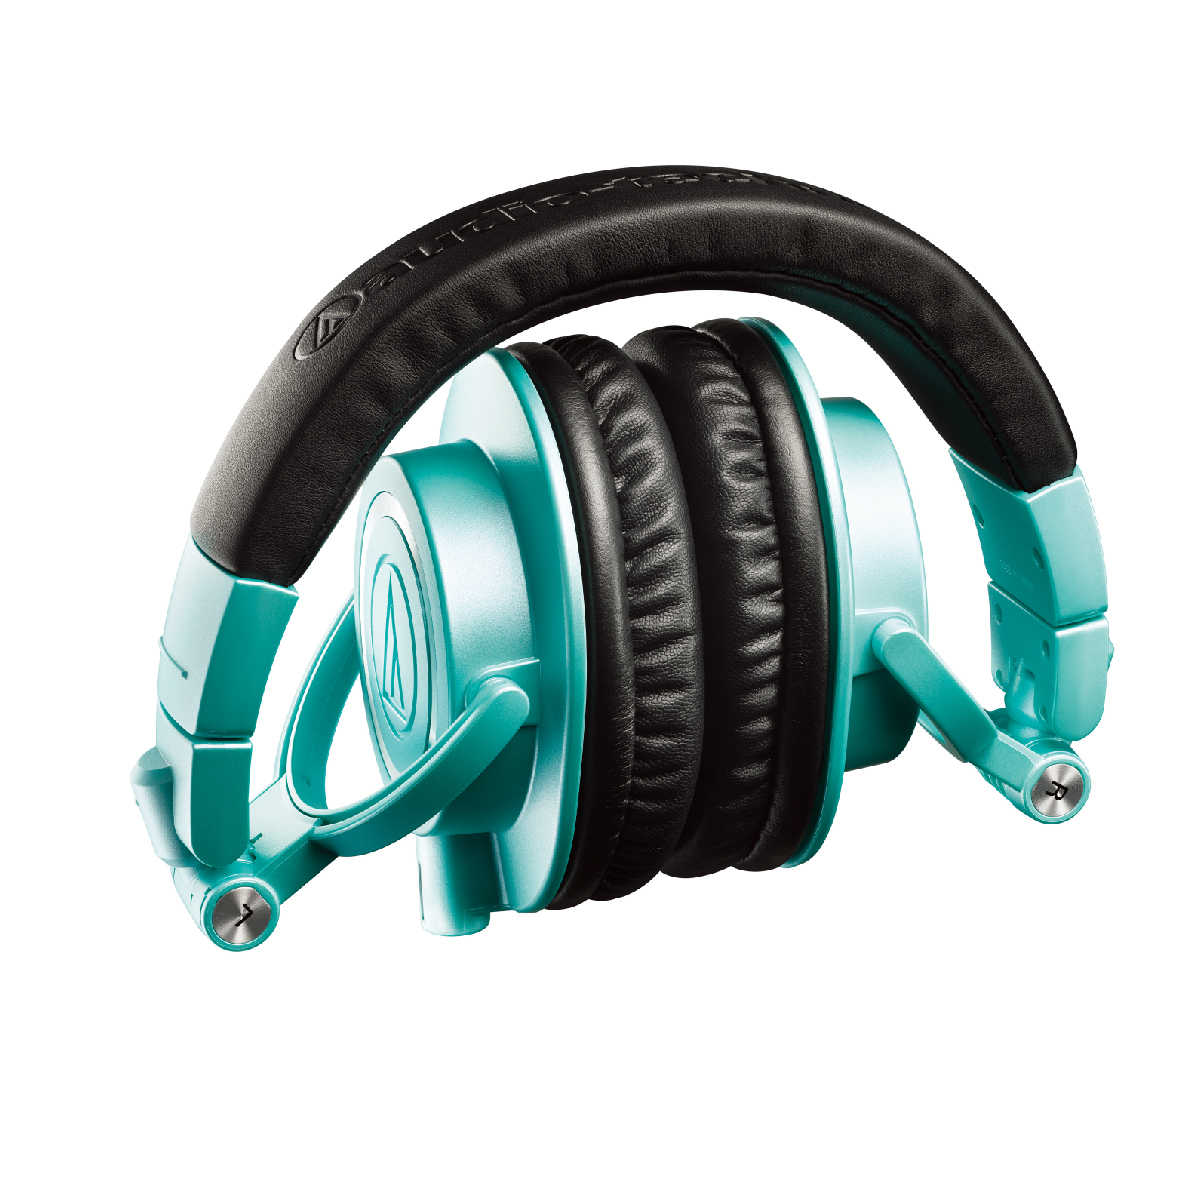 鐵三角 ATH-M50x 冰藍色 高音質 錄音室用 專業 監聽 耳罩式 耳機 | 金曲音響